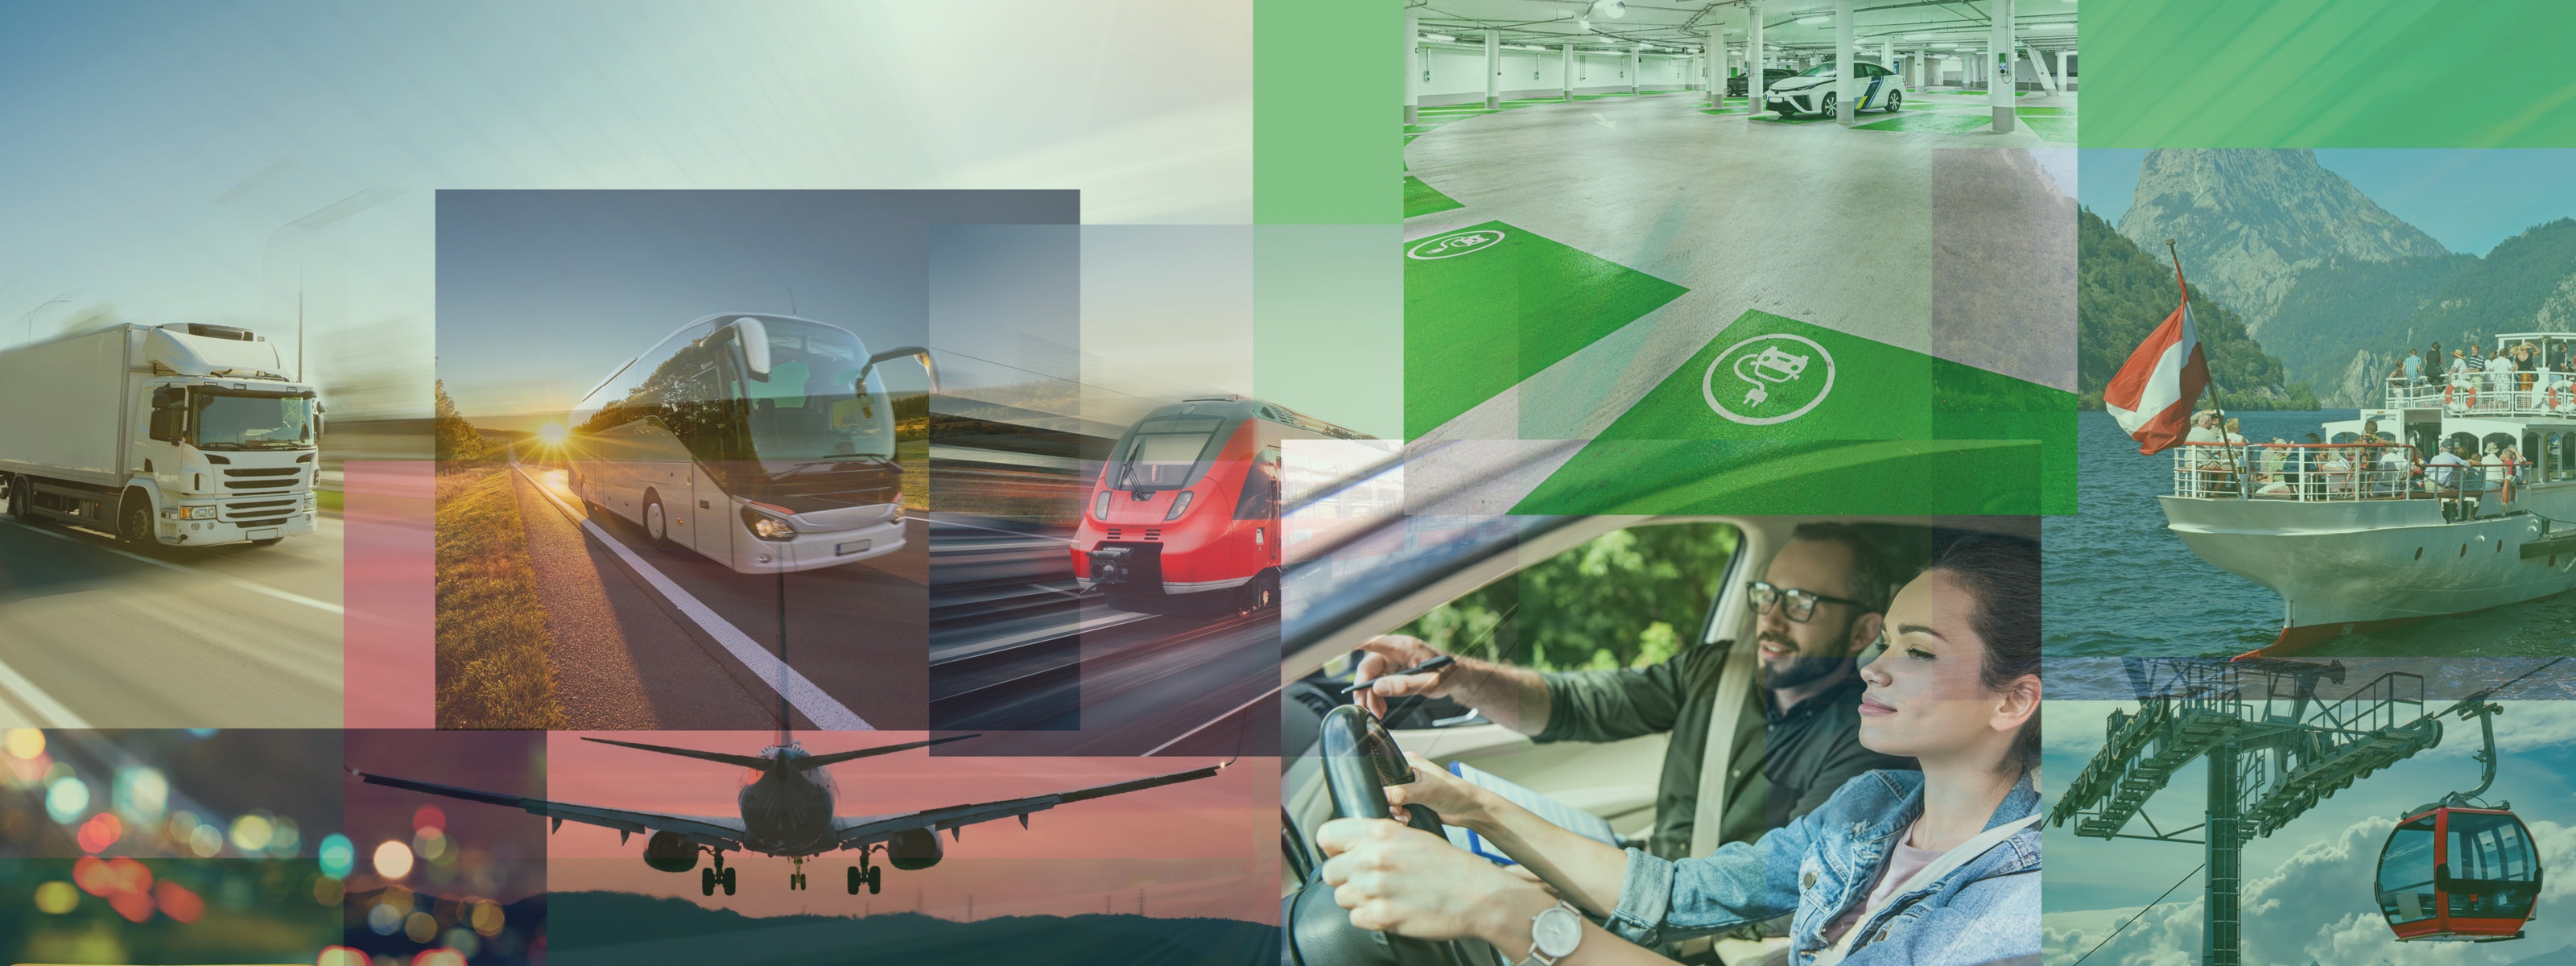 Collage mehrere Bilder mit grünen eckigen Farbelementen: Lkw, Bus, Zug, Auto fahrende Personen, Seilbahngondel, Schiff, Flugzeug und Taxischild